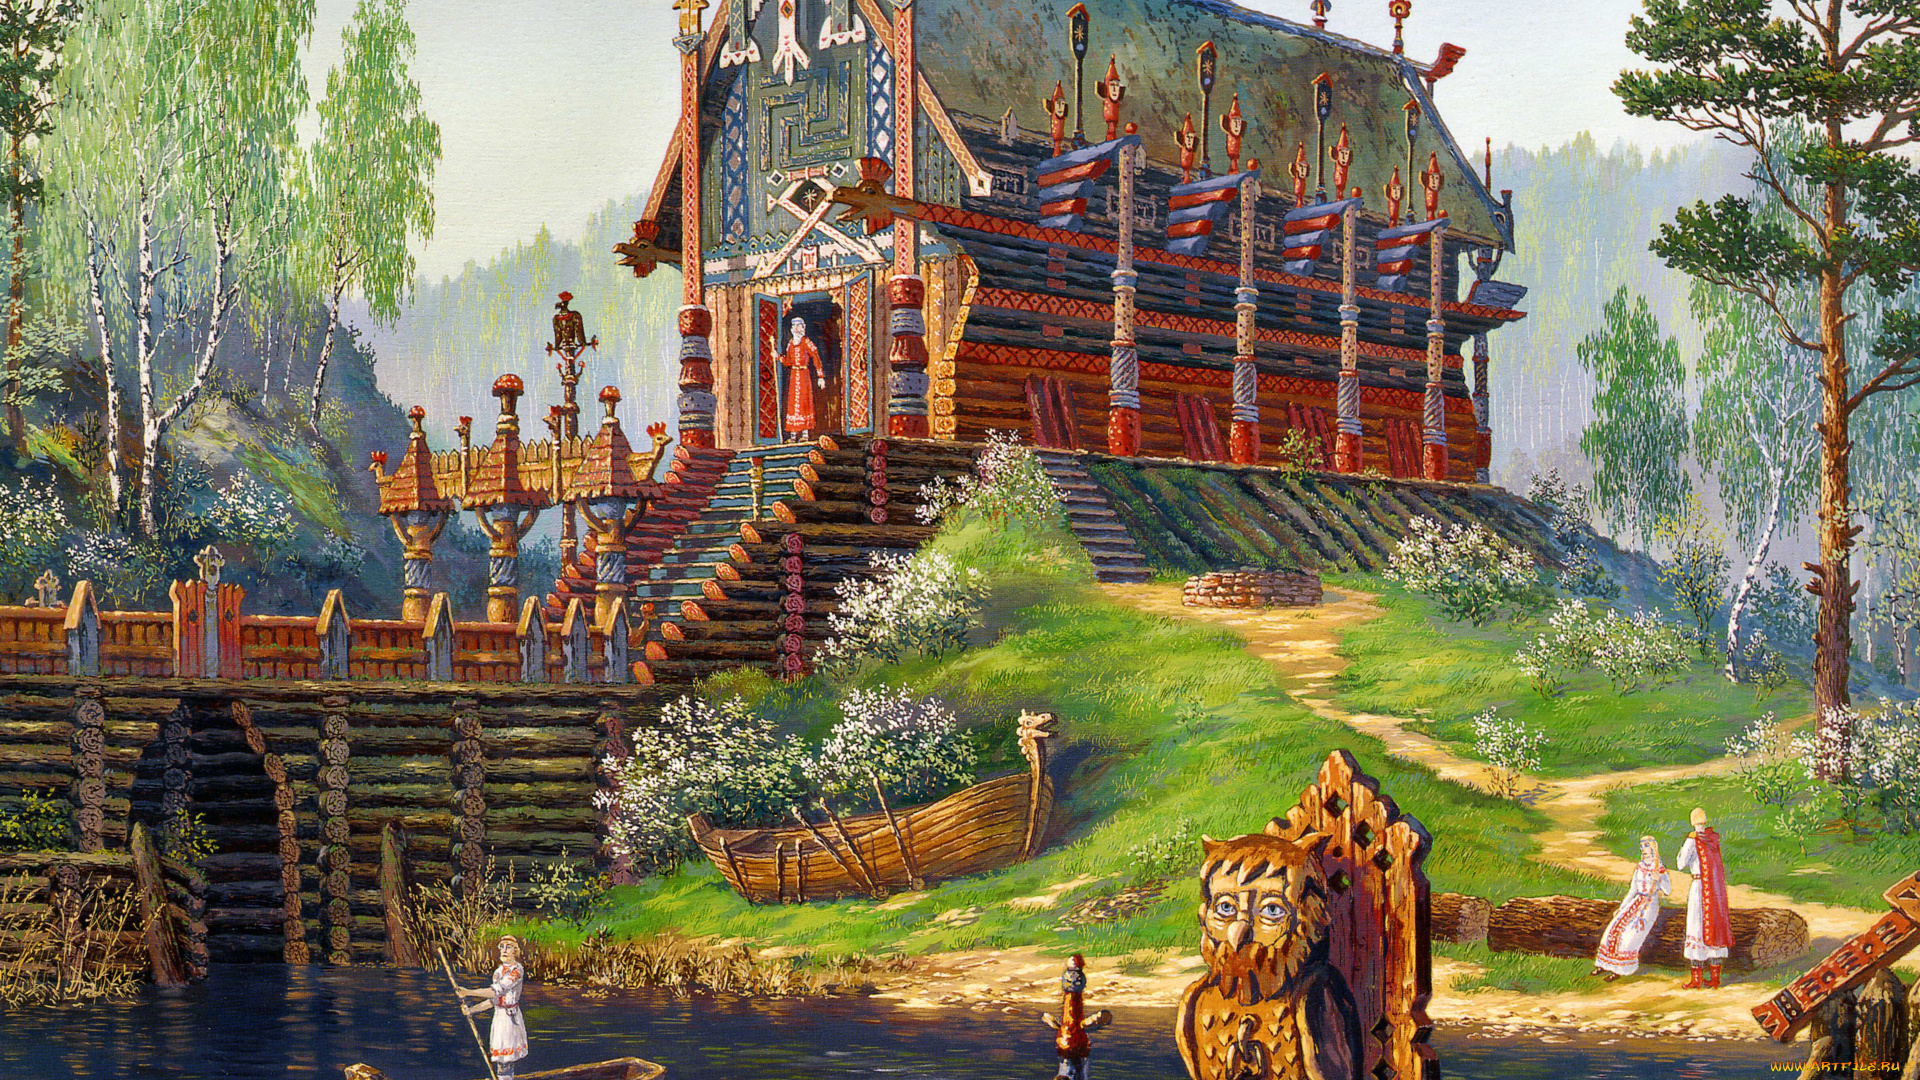 храм, свентовида, весна, рисованные, всеволод, иванов, река, лодка, русский, фольклор